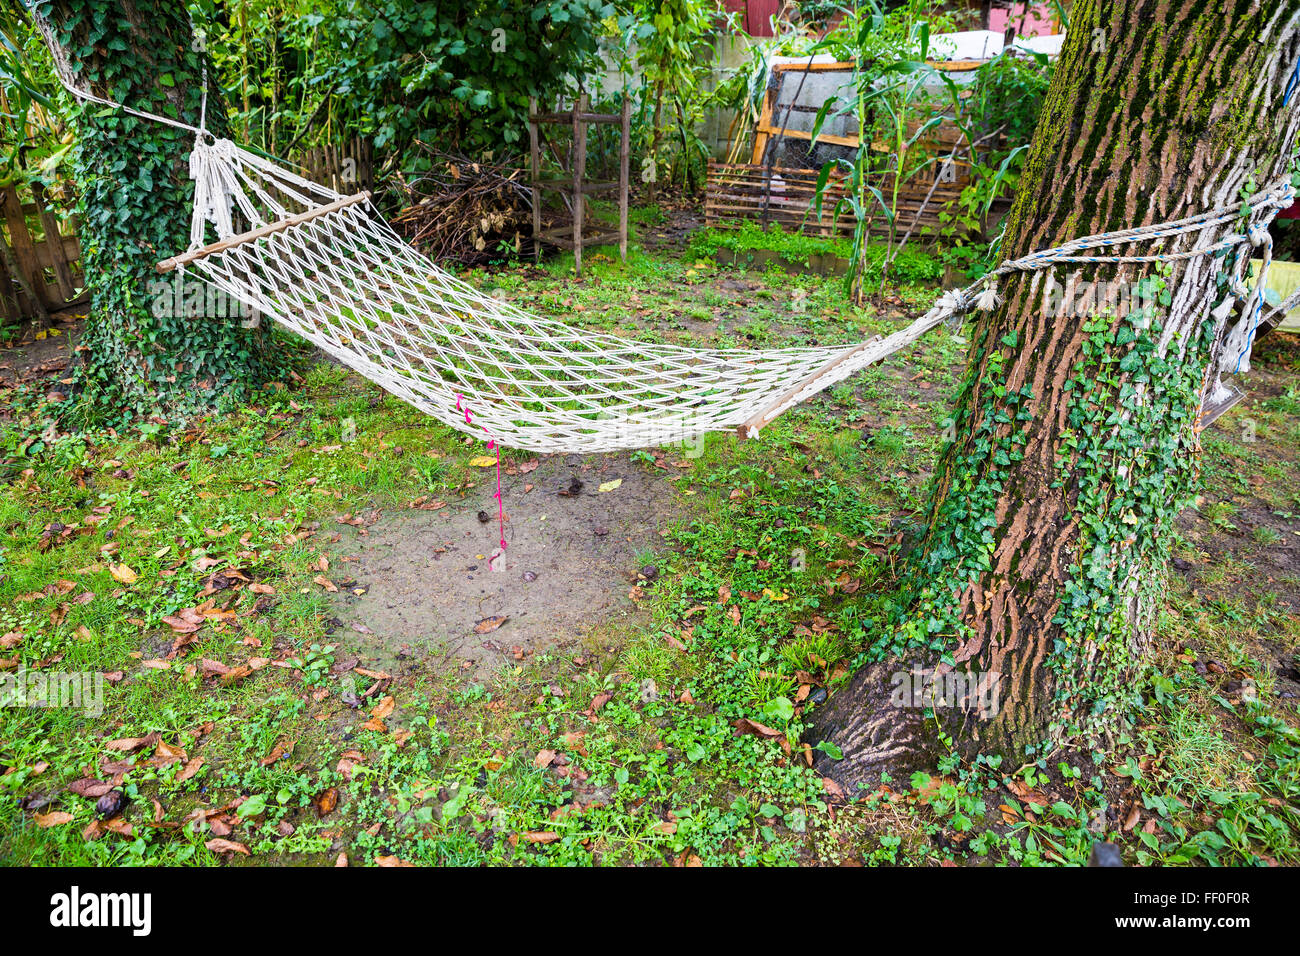 Komfortable Netz Hängematte zwischen zwei Bäumen in einem grünen Garten  Stockfotografie - Alamy